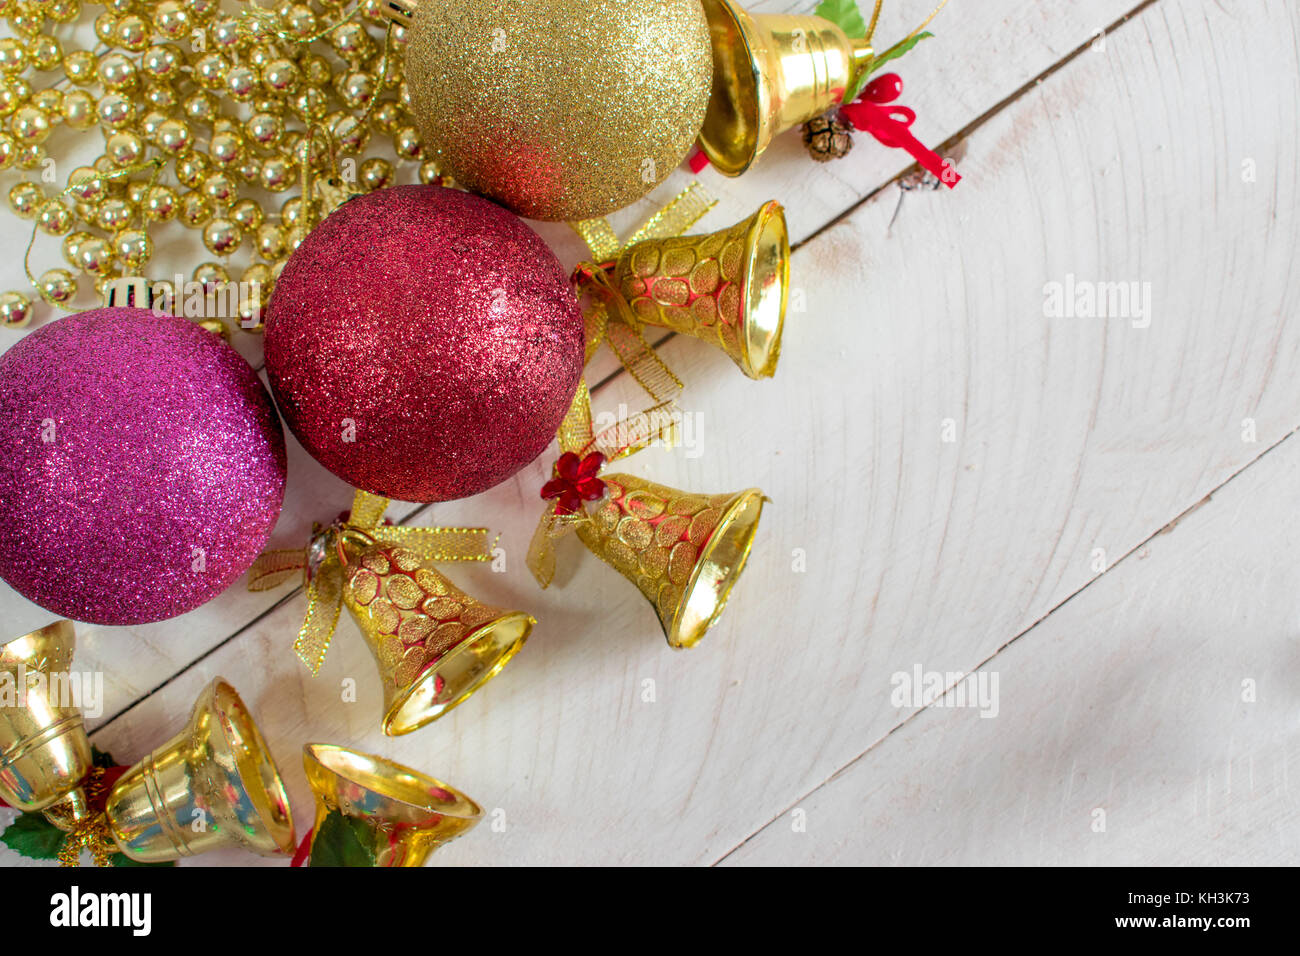 Decoración de Navidad, cadenas, campanas y coloridas bolas reflectantes, encima de una superficie de madera blanca y fondo blanco. Foto de stock